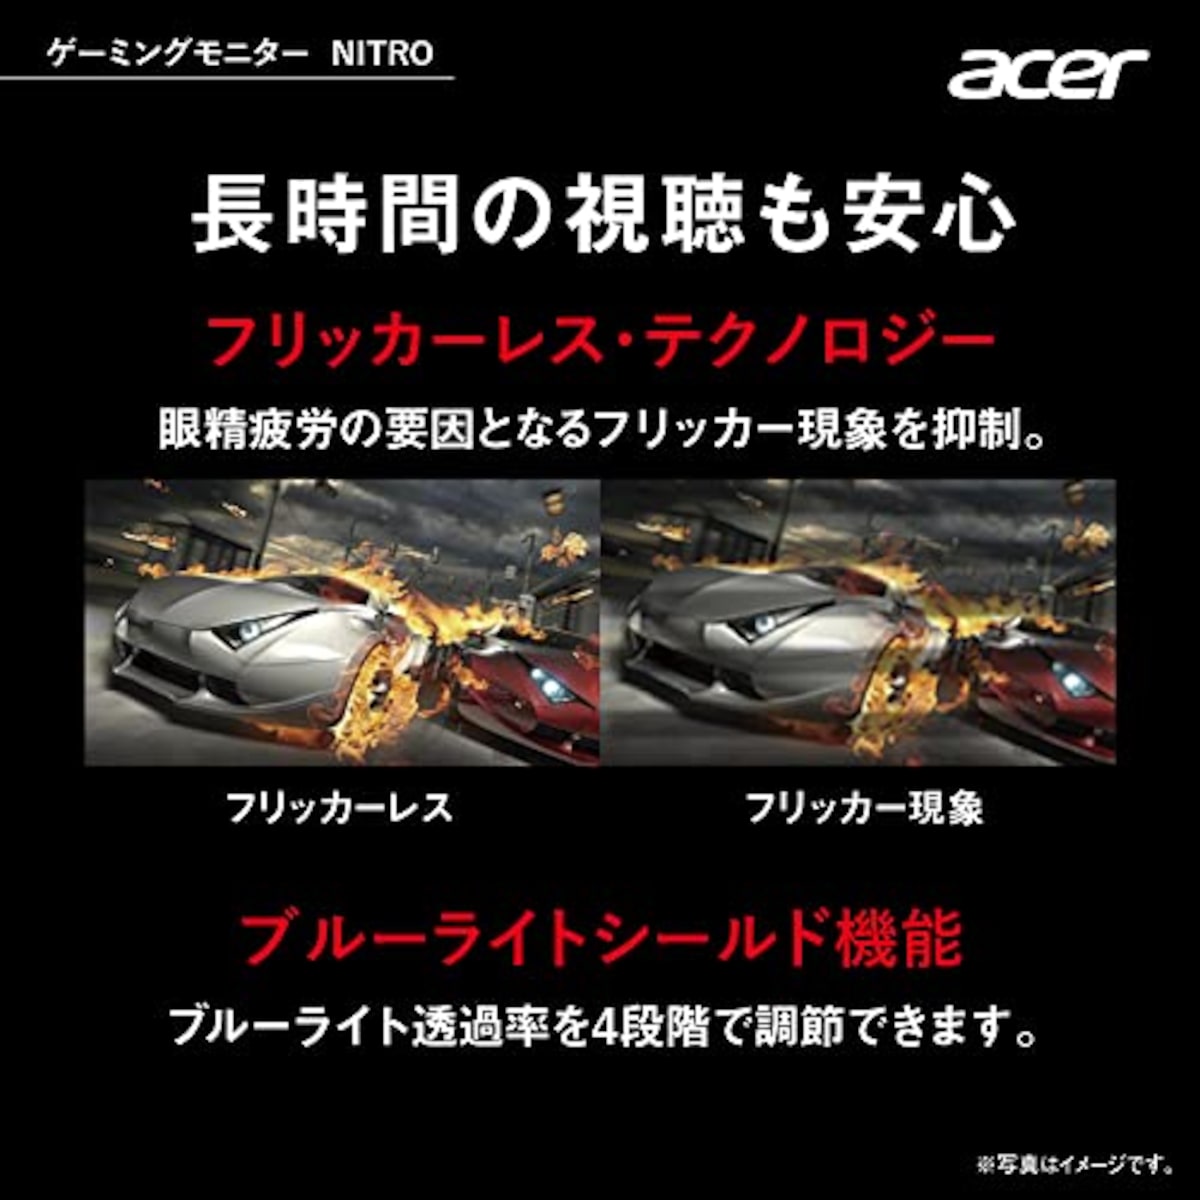  日本エイサー 【Amazon.co.jp限定】 Acer Nitro ゲーミングモニター 21.5インチ VA 非光沢 フルHD 100Hz 1ms(VRB) HDMI ミニD-Sub15 VESAマウント対応 スピーカー内蔵 ヘッドホン端子 AMD FreeSync QG221QHbmiix PC/PS4/Switch向き画像5 